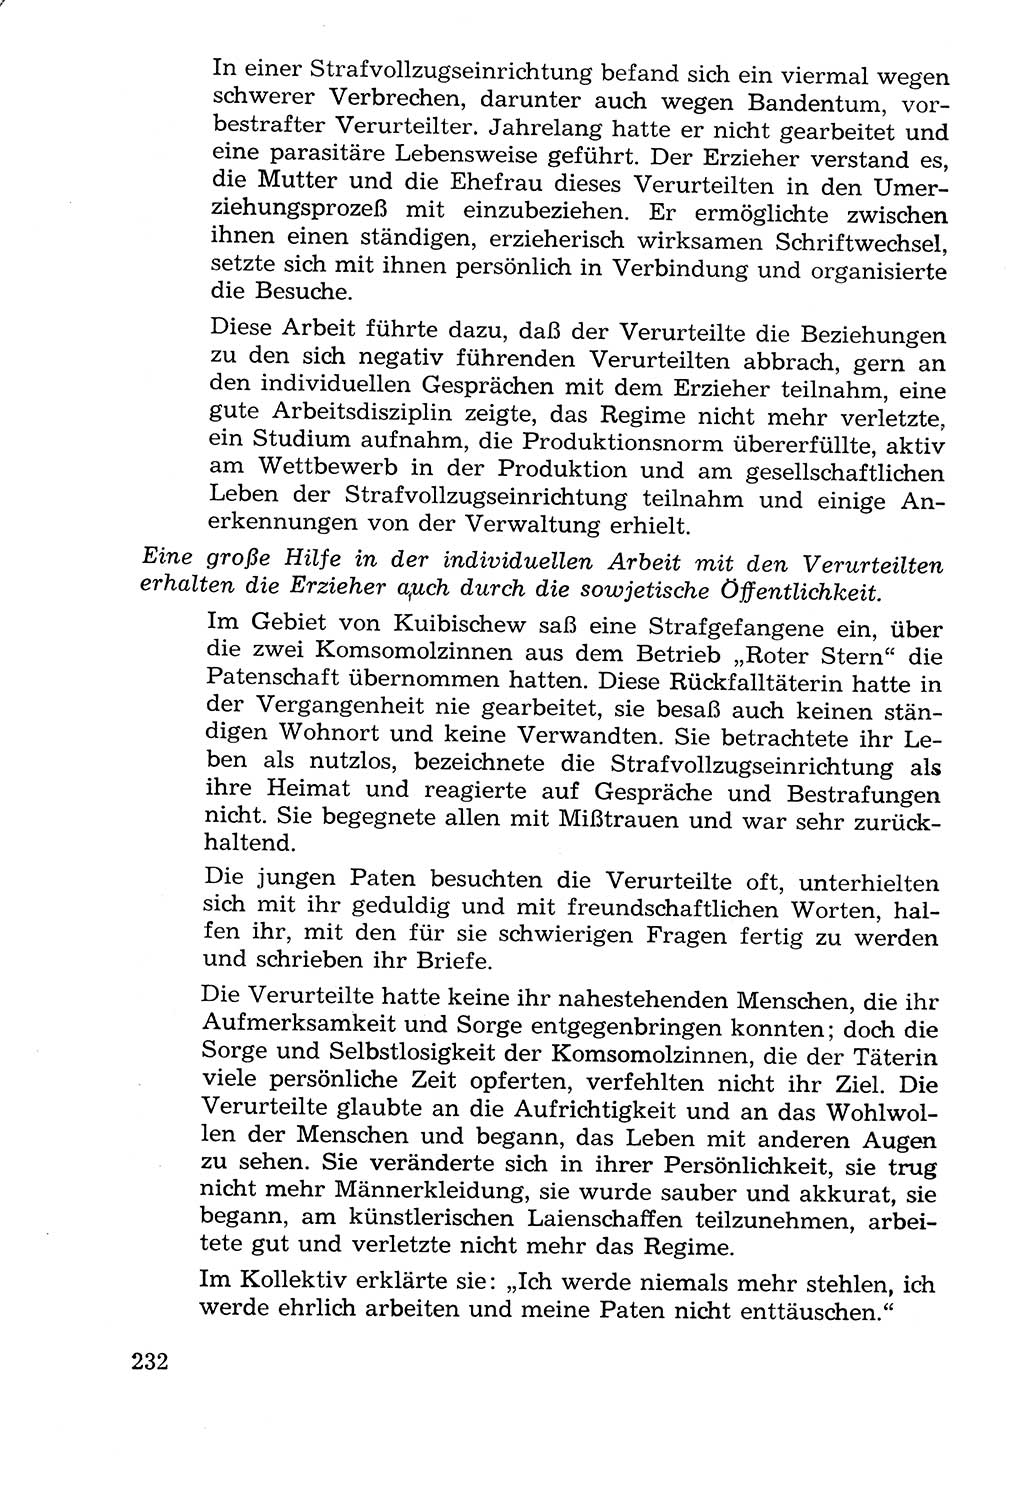 Lehrbuch der Strafvollzugspädagogik [Deutsche Demokratische Republik (DDR)] 1969, Seite 232 (Lb. SV-Pd. DDR 1969, S. 232)